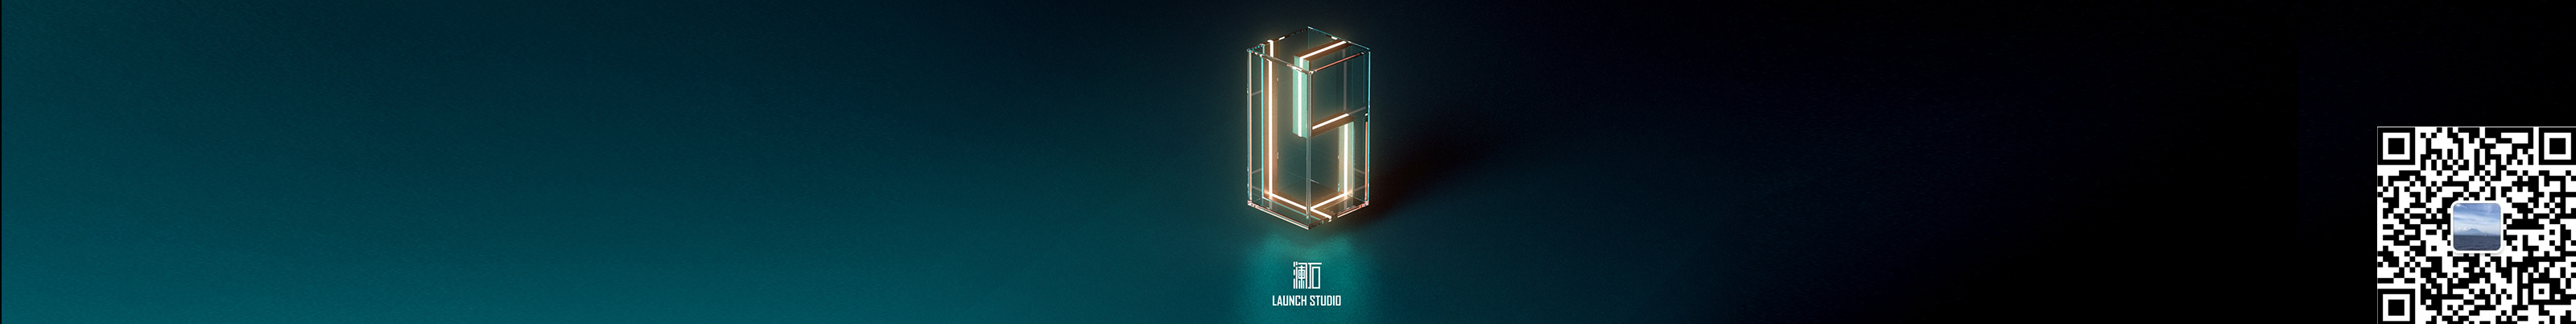 澜石 Launch studios profilbanner